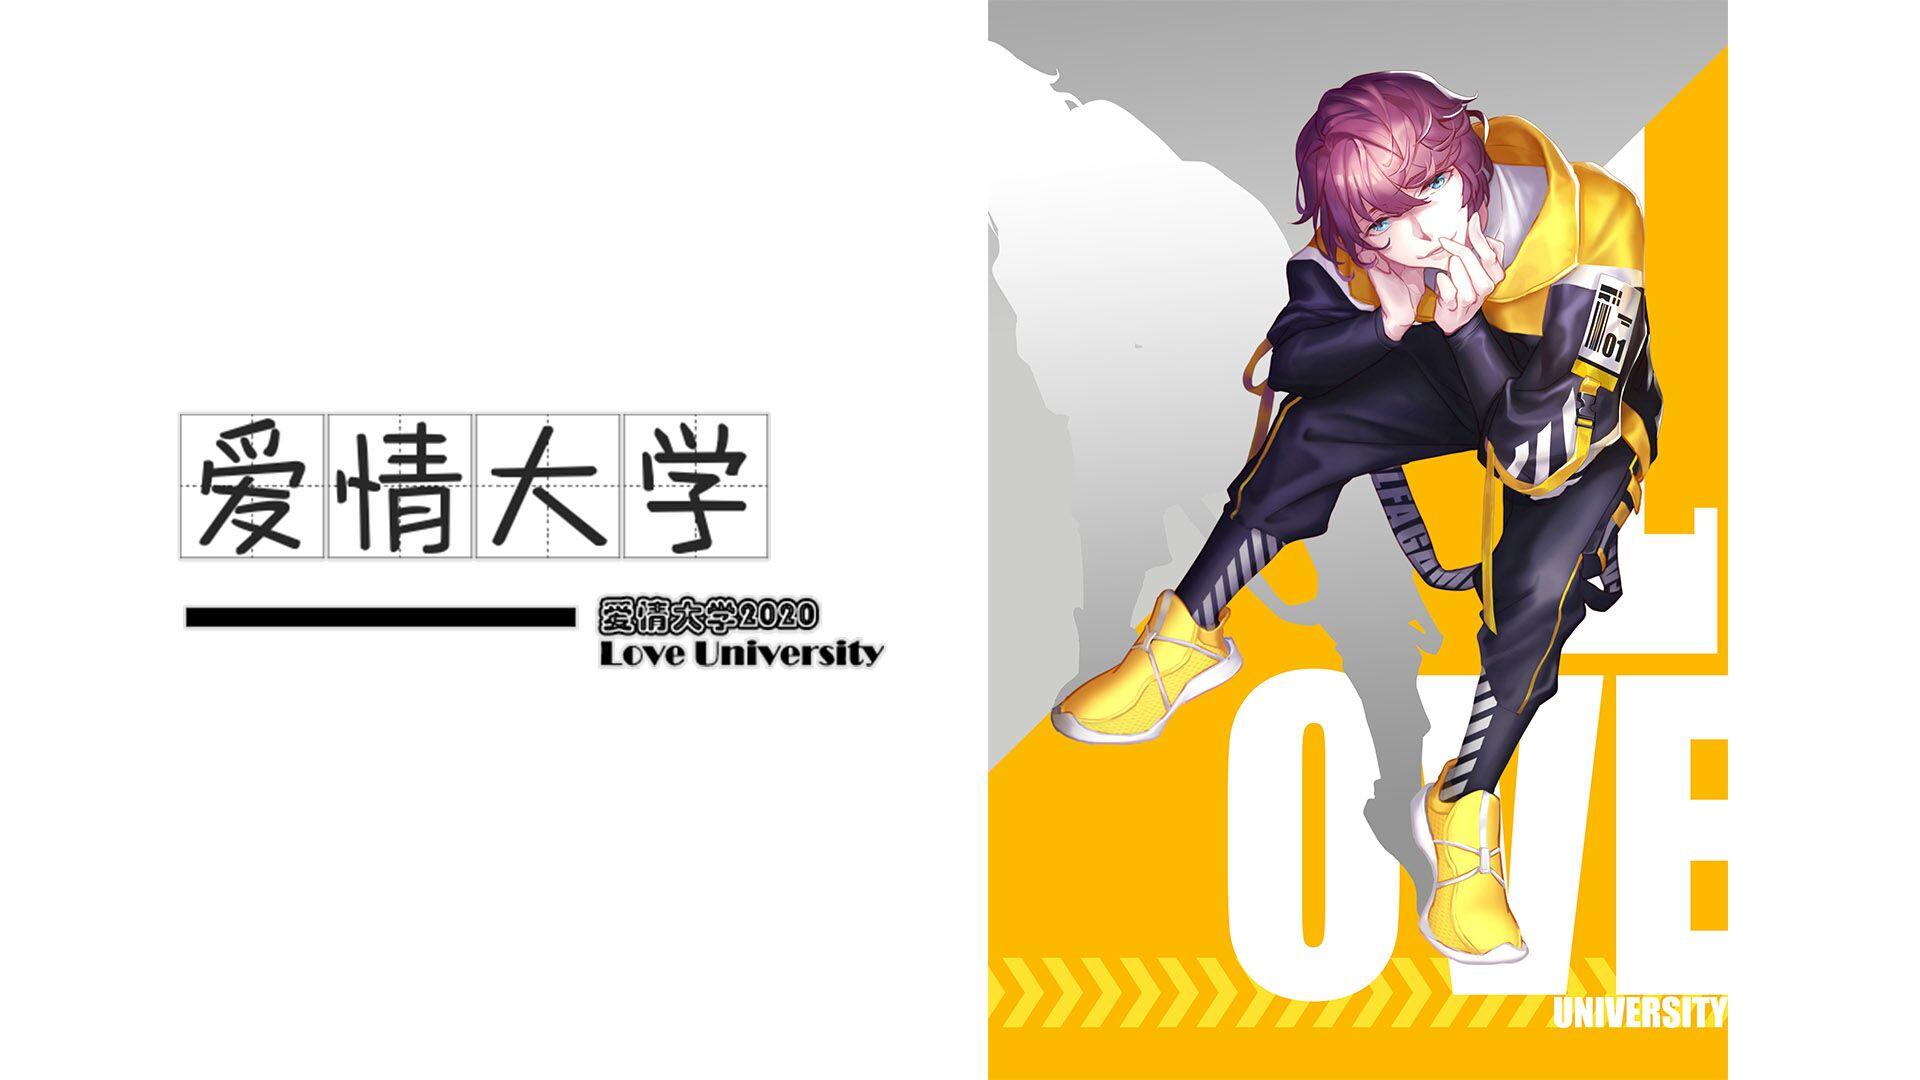 Banner of Università dell'amore 2020 